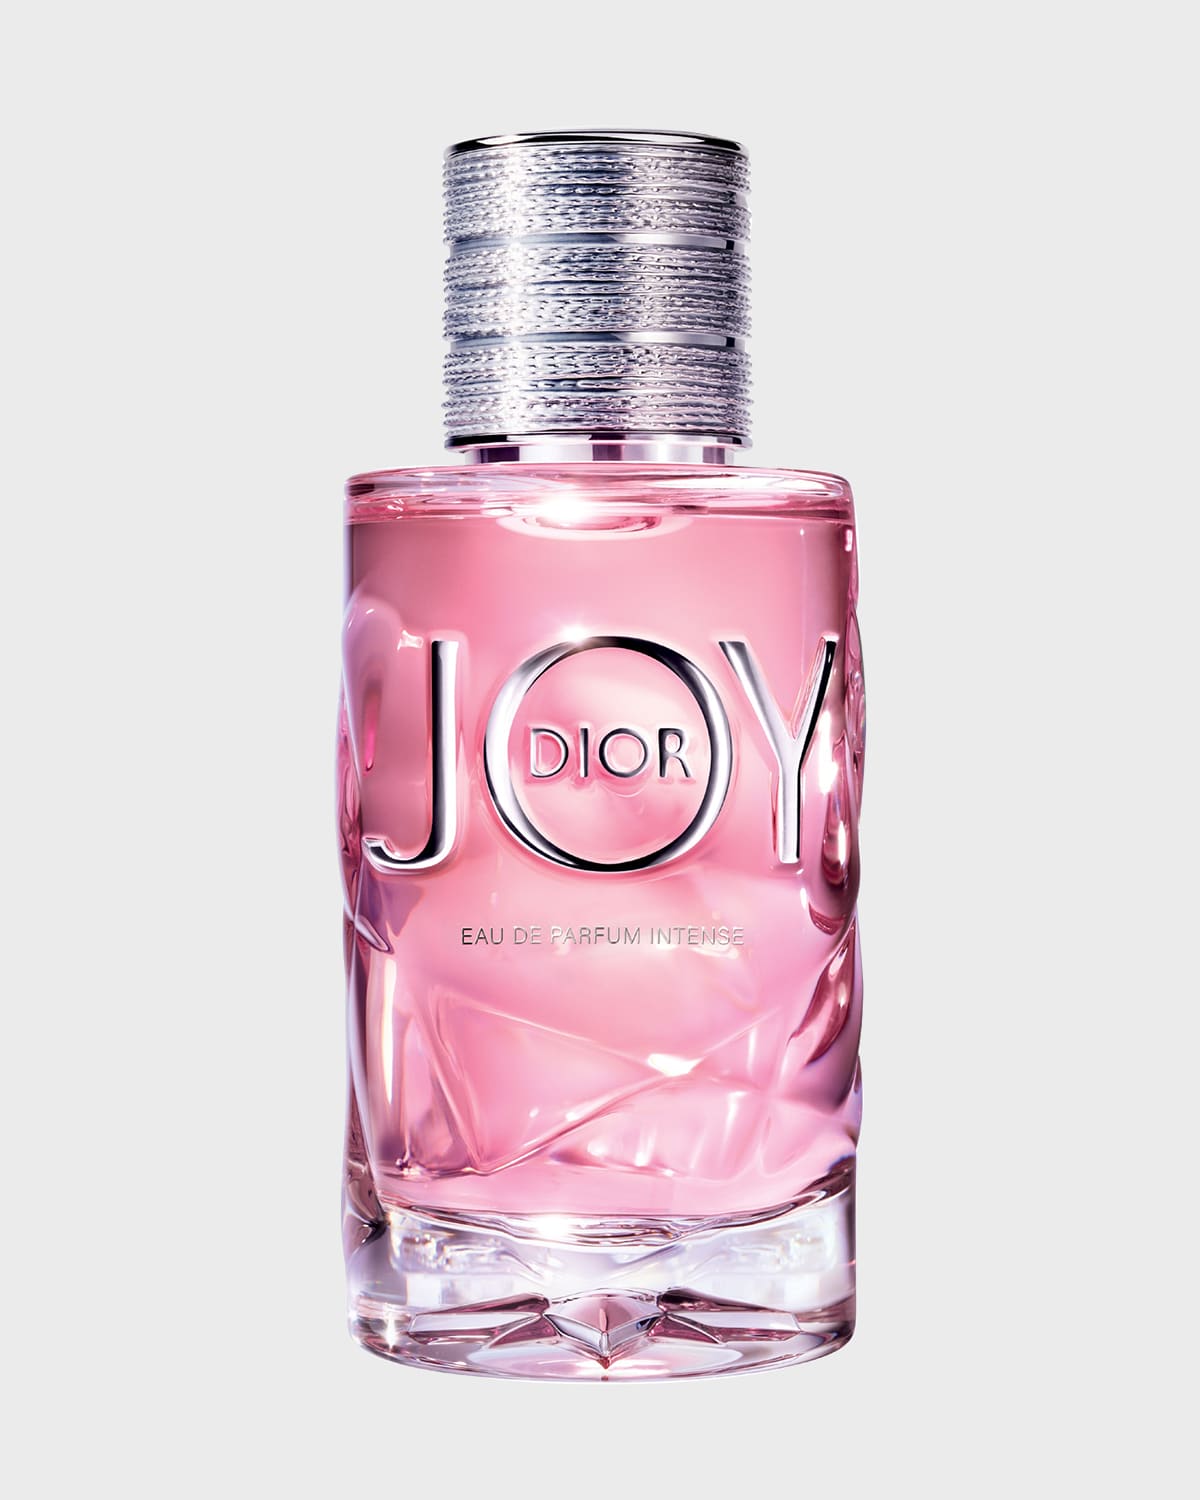 Joy by Dior Eau de Parfum Intense, 3.0 oz.